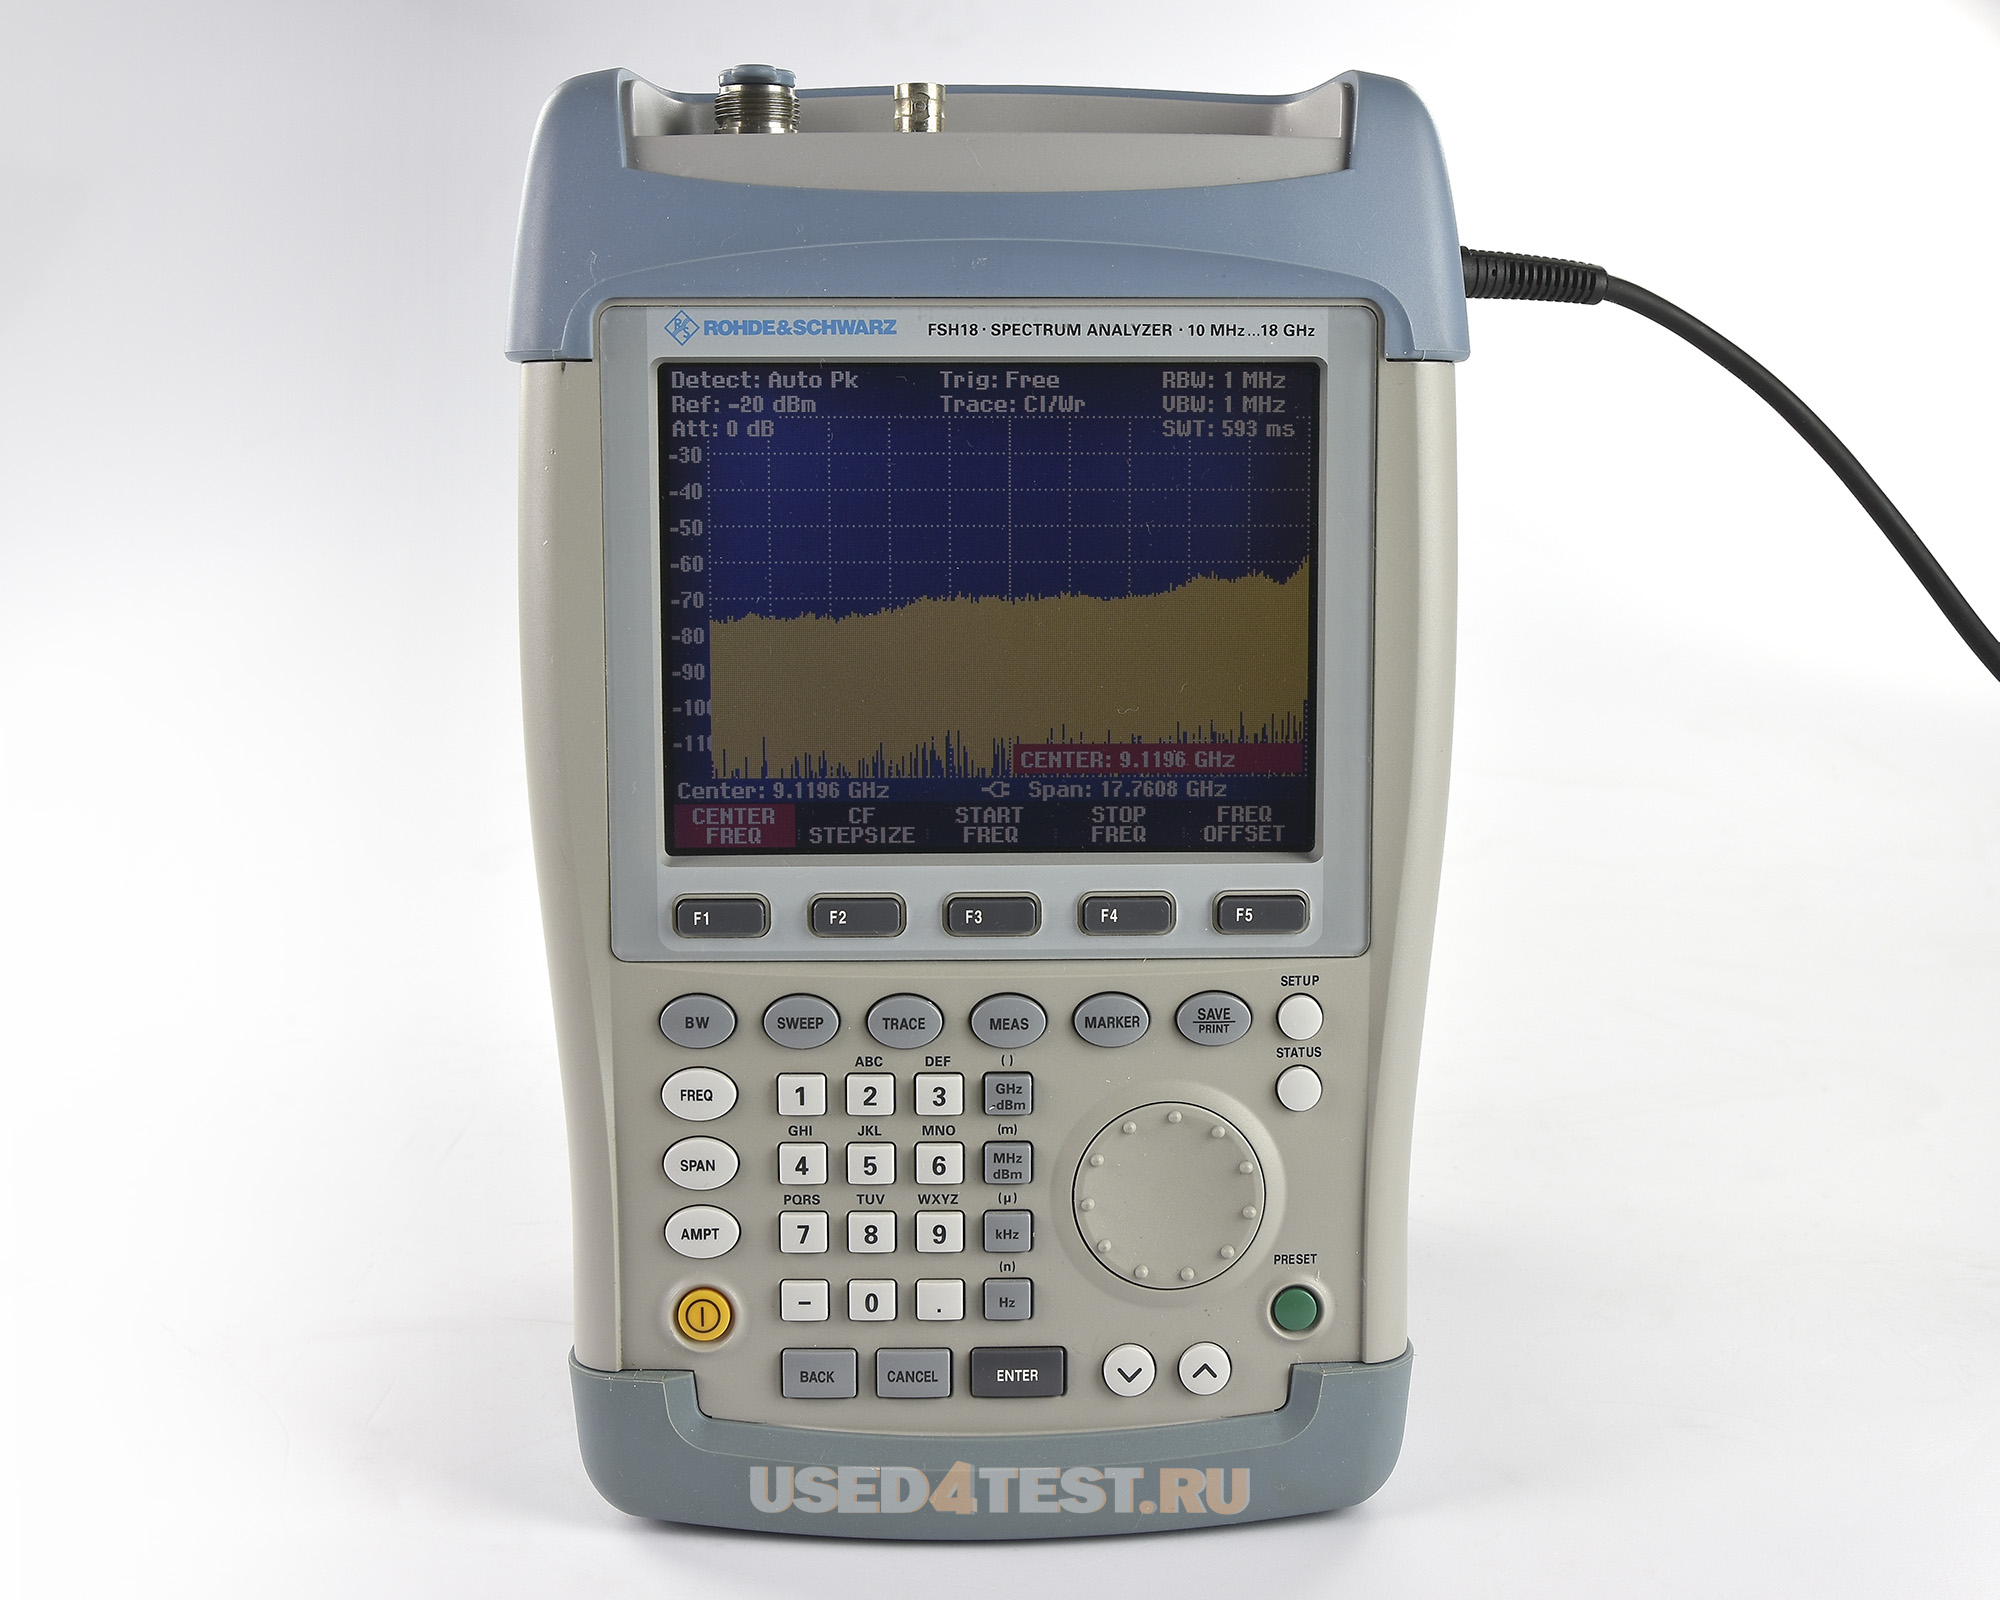 Портативный анализатор спектра
 Rohde&Schwarz FSH18
 с диапазоном частот от 10 МГц до 18 ГГц
 

 Стоимость указана в Рублях DDP Москва по безналичному расчету включая НДС 20%
